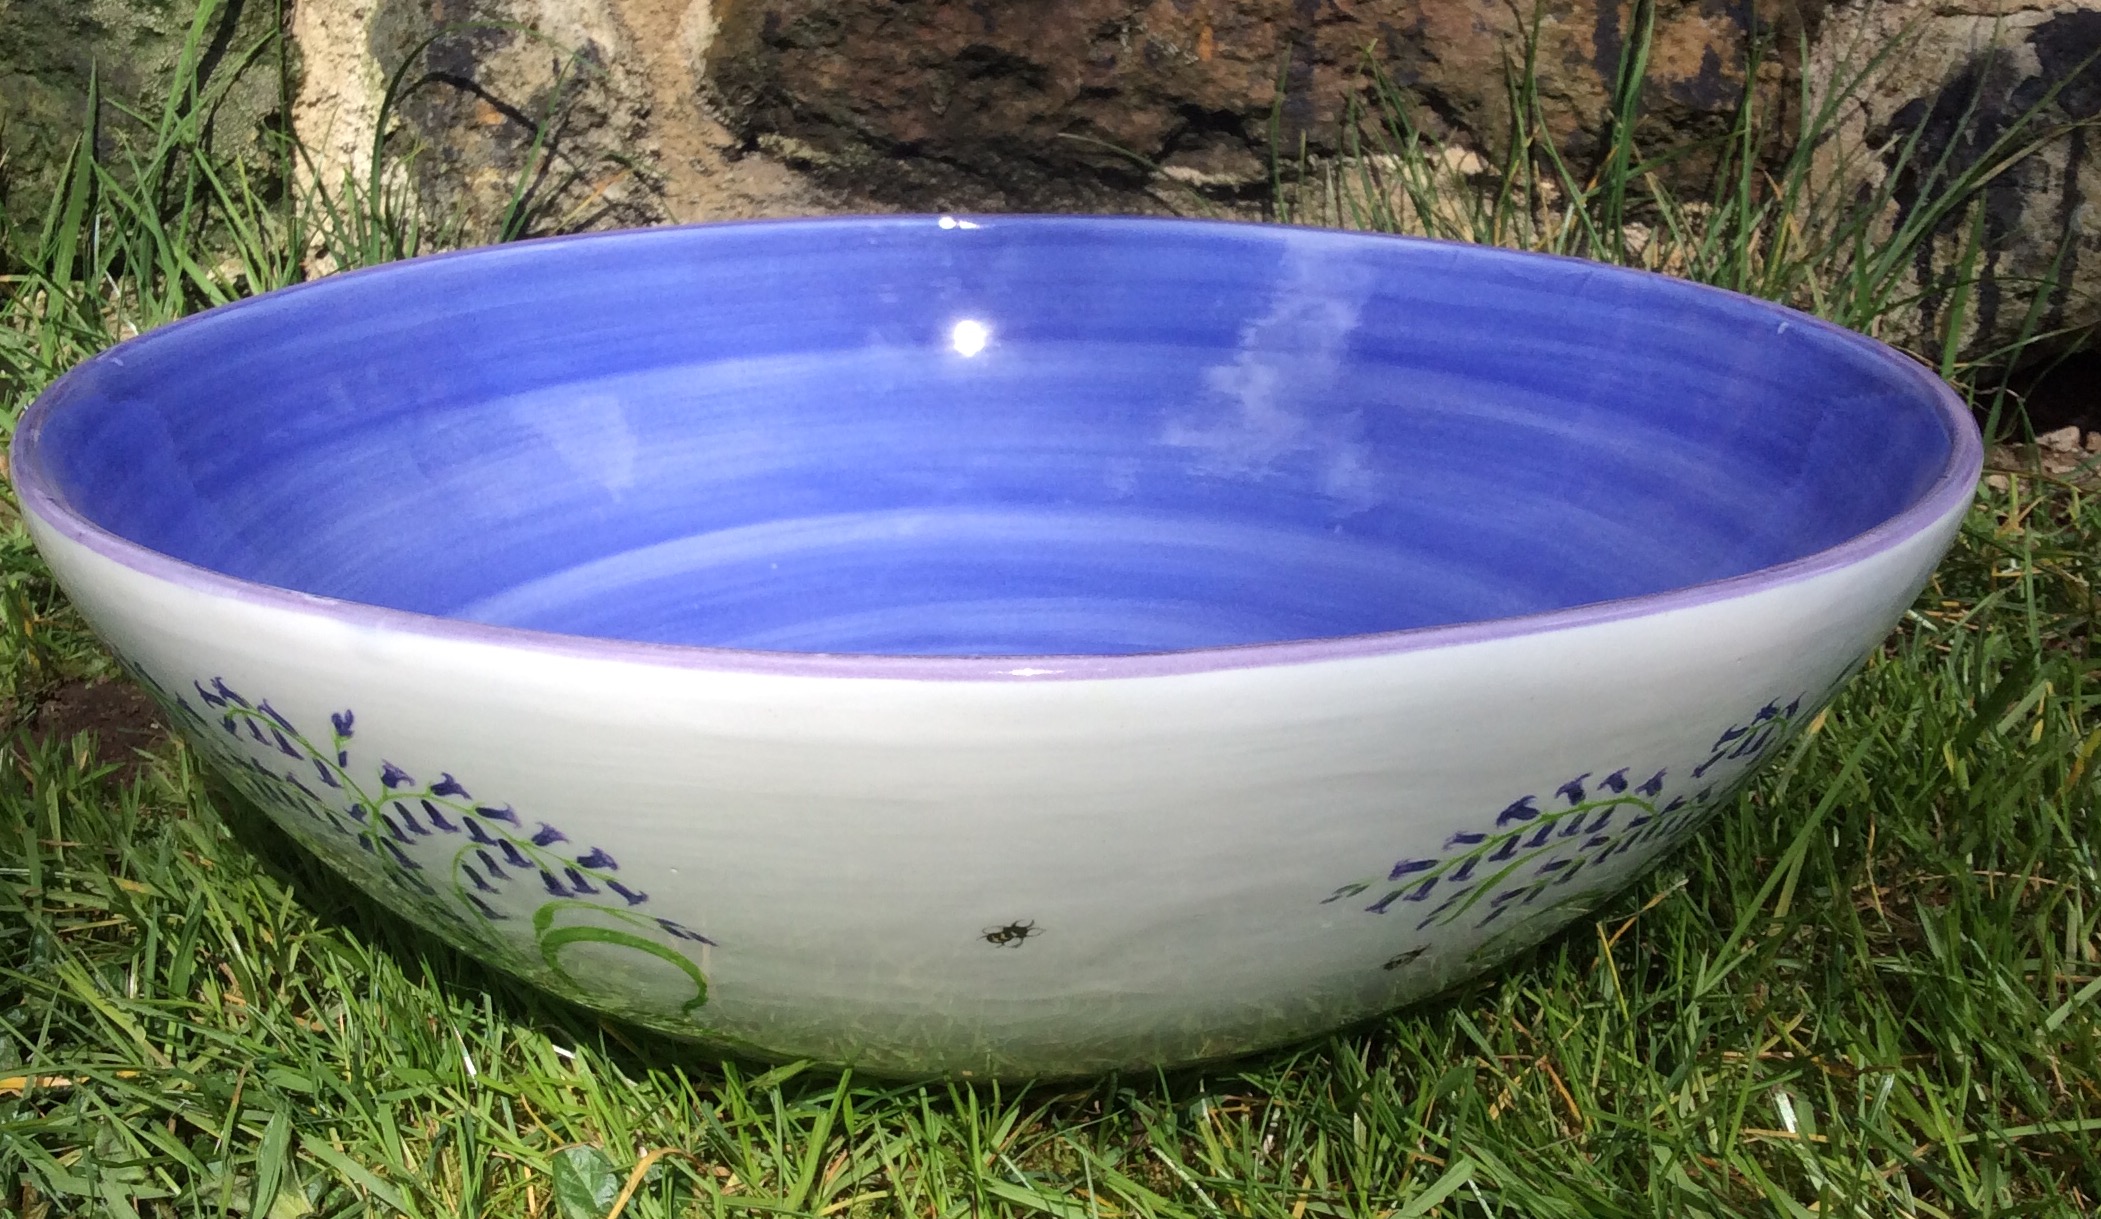 Bluebell Bowl